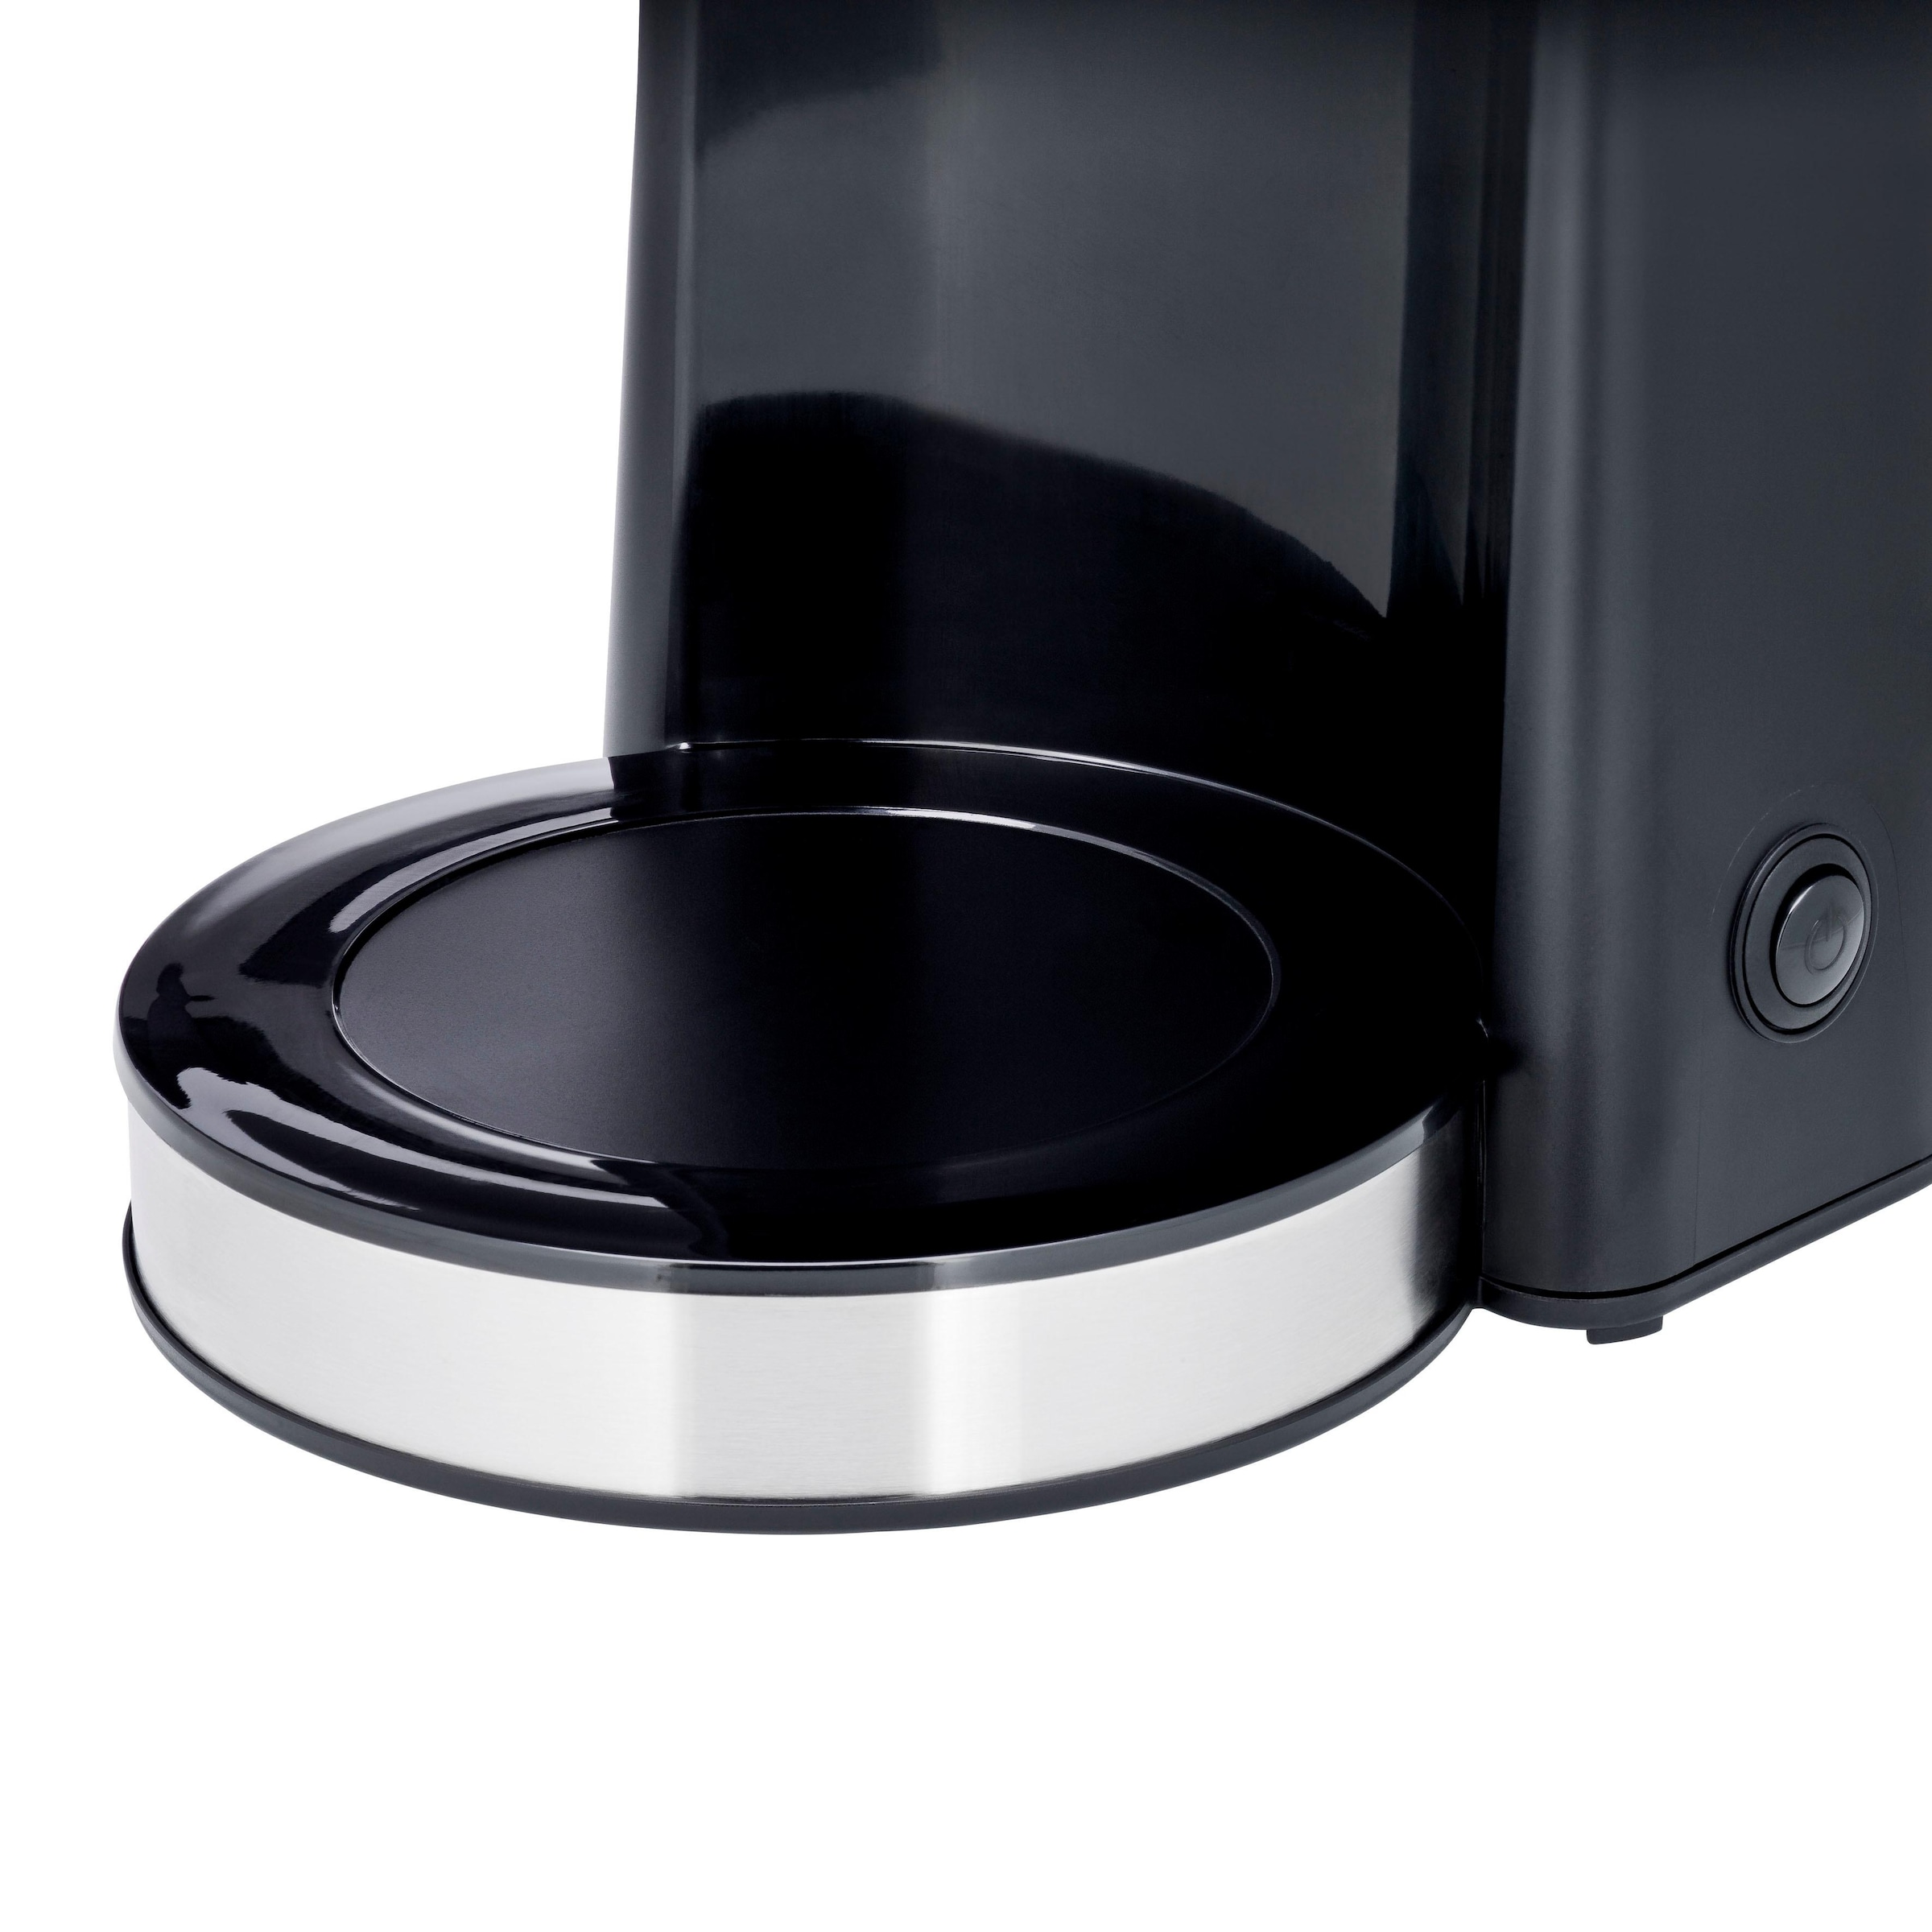 WMF Filterkaffeemaschine »Bueno Pro«, 1,25 l Kaffeekanne, Papierfilter, 1x4,  mit Thermokanne mit 3 Jahren XXL Garantie